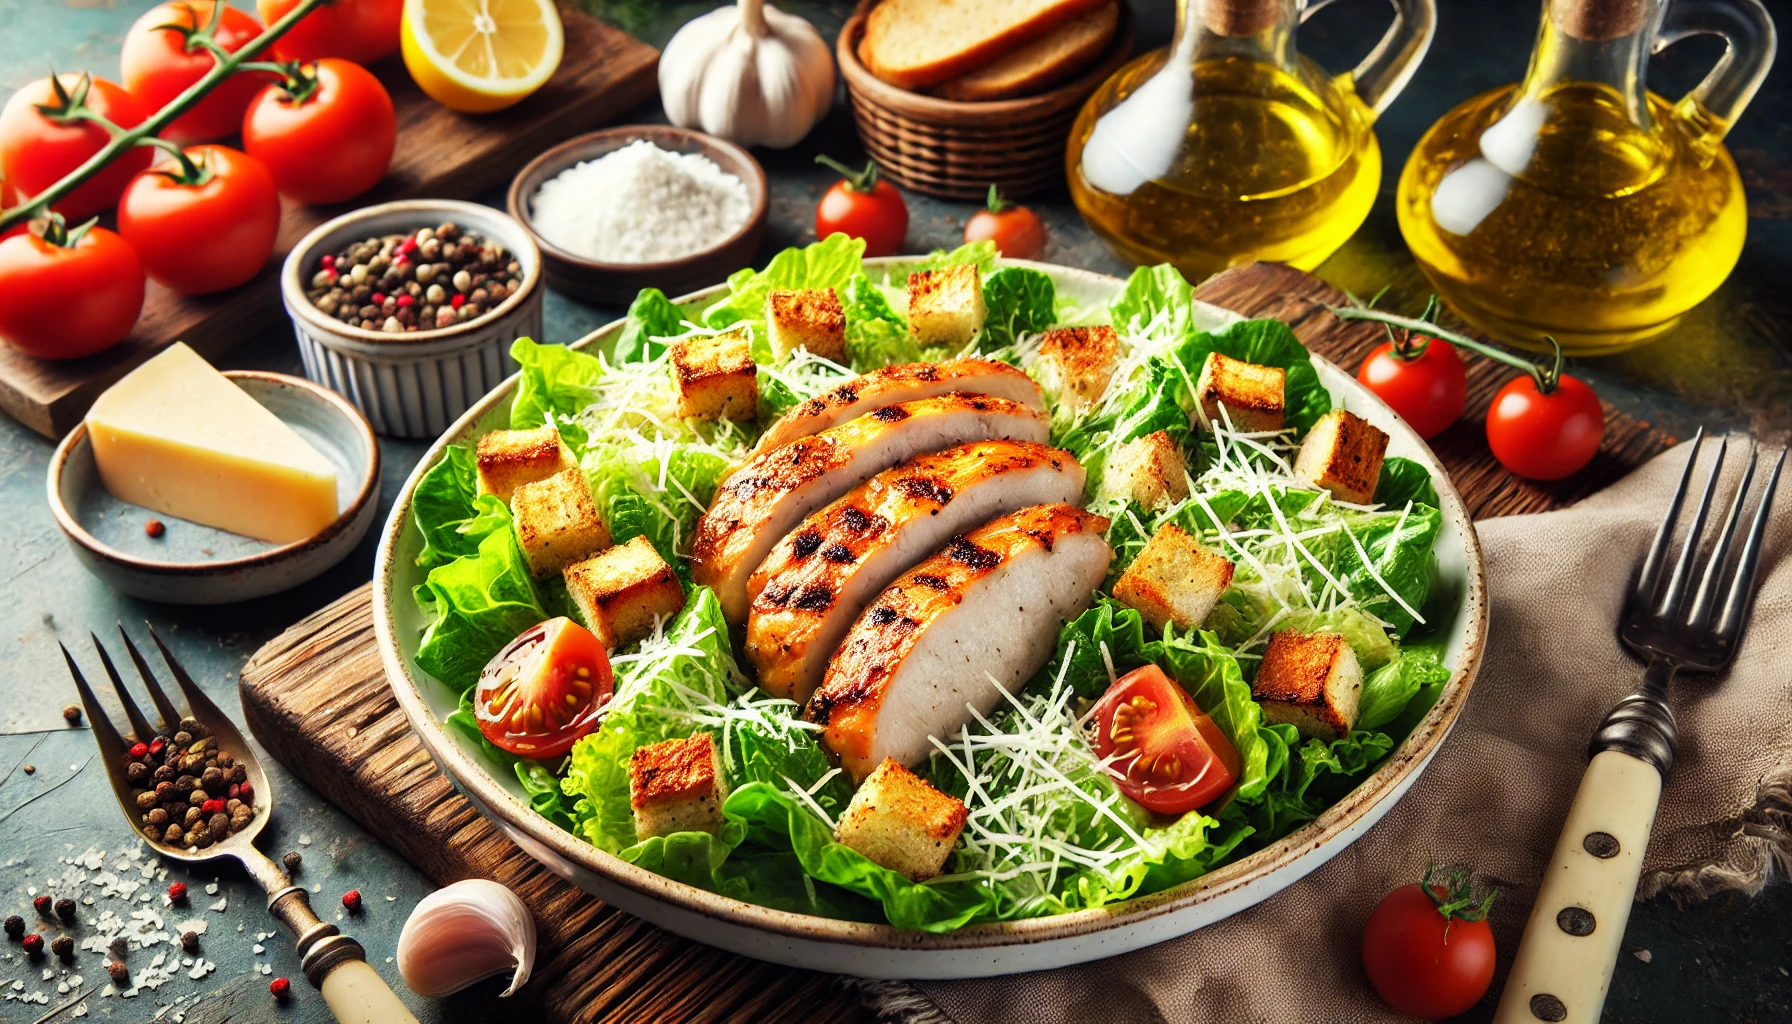 Caesar Salade met Gegrilde Kip: Een Klassieke Salade met een Twist